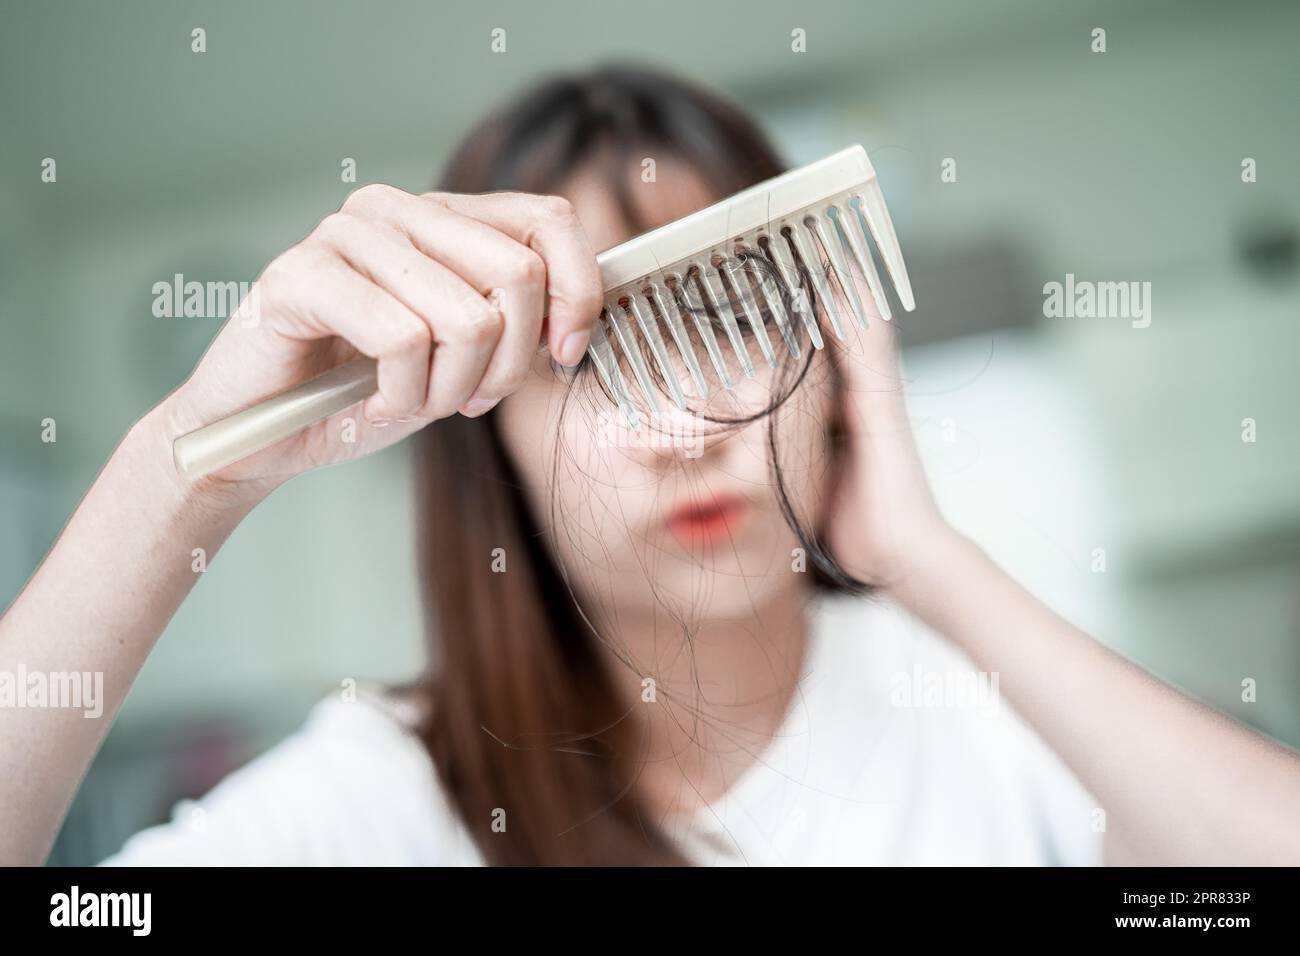 Femme asiatique ont des problèmes avec la perte de cheveux longue attacher à la brosse de peigne. Banque D'Images